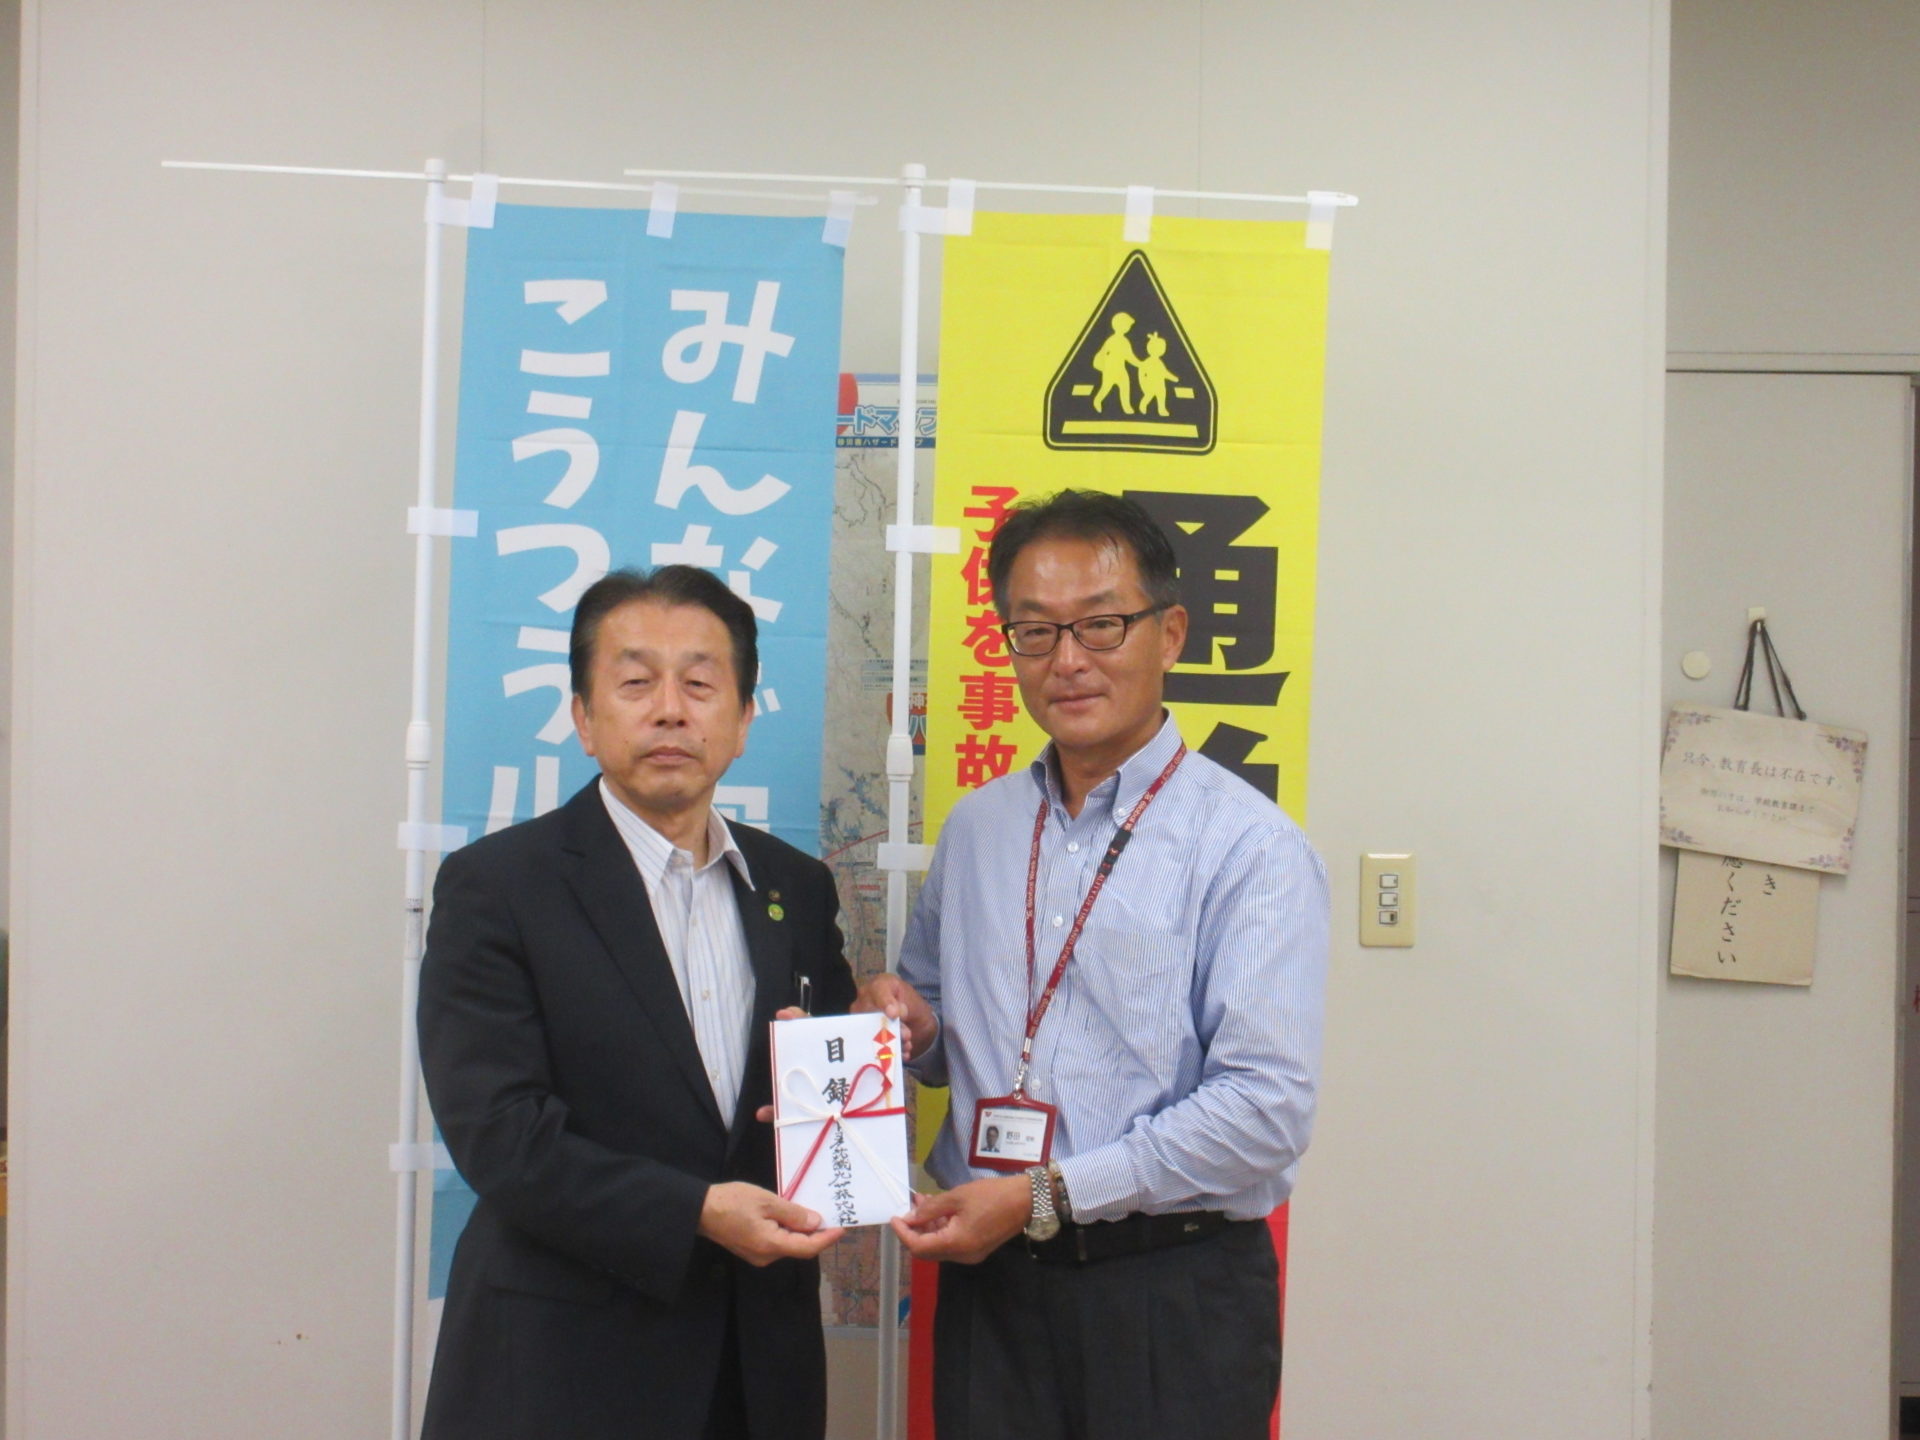 神埼市教育委員会への贈呈式